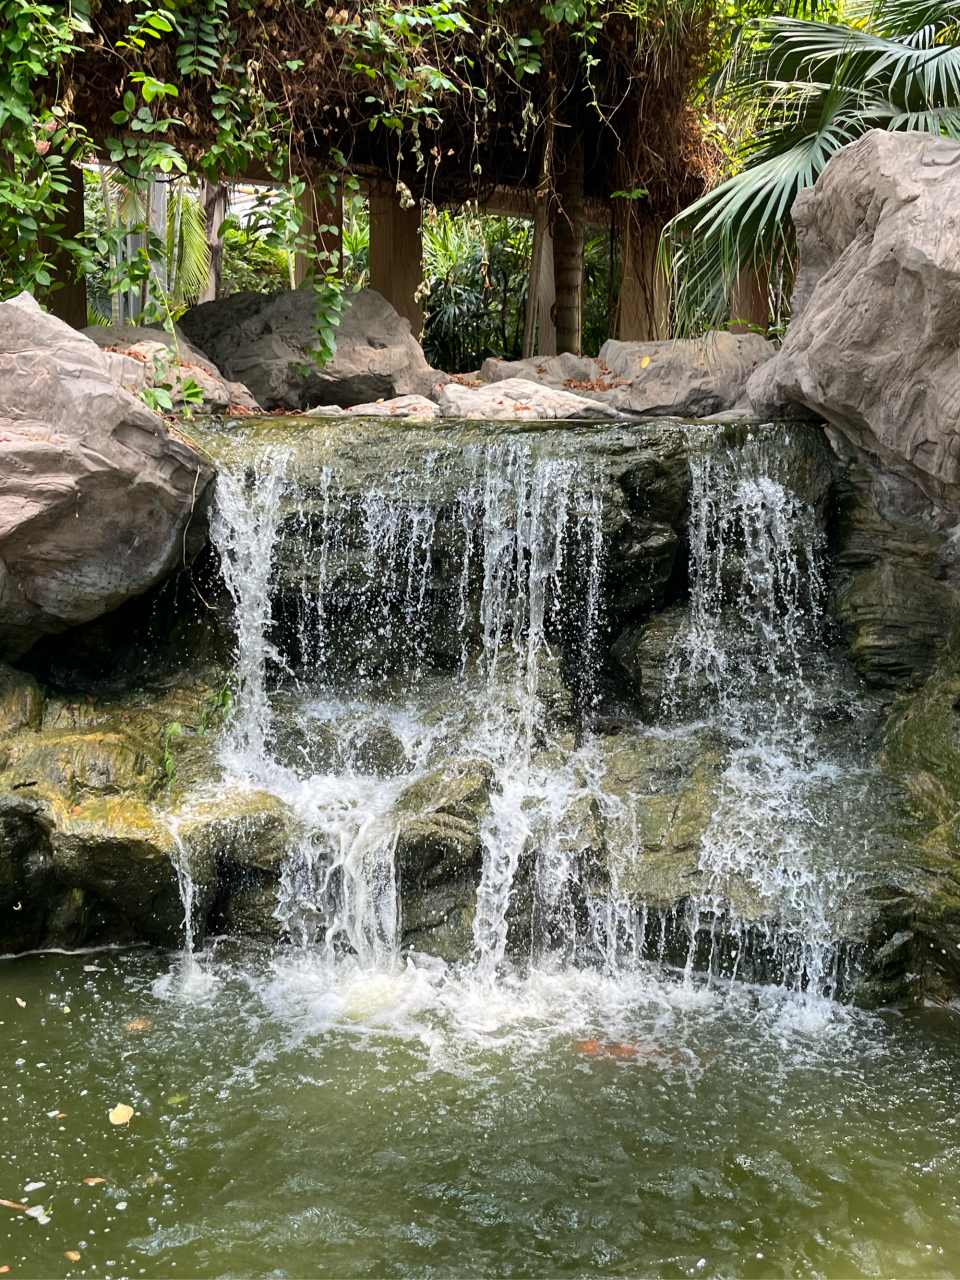 天津热带植物园图片